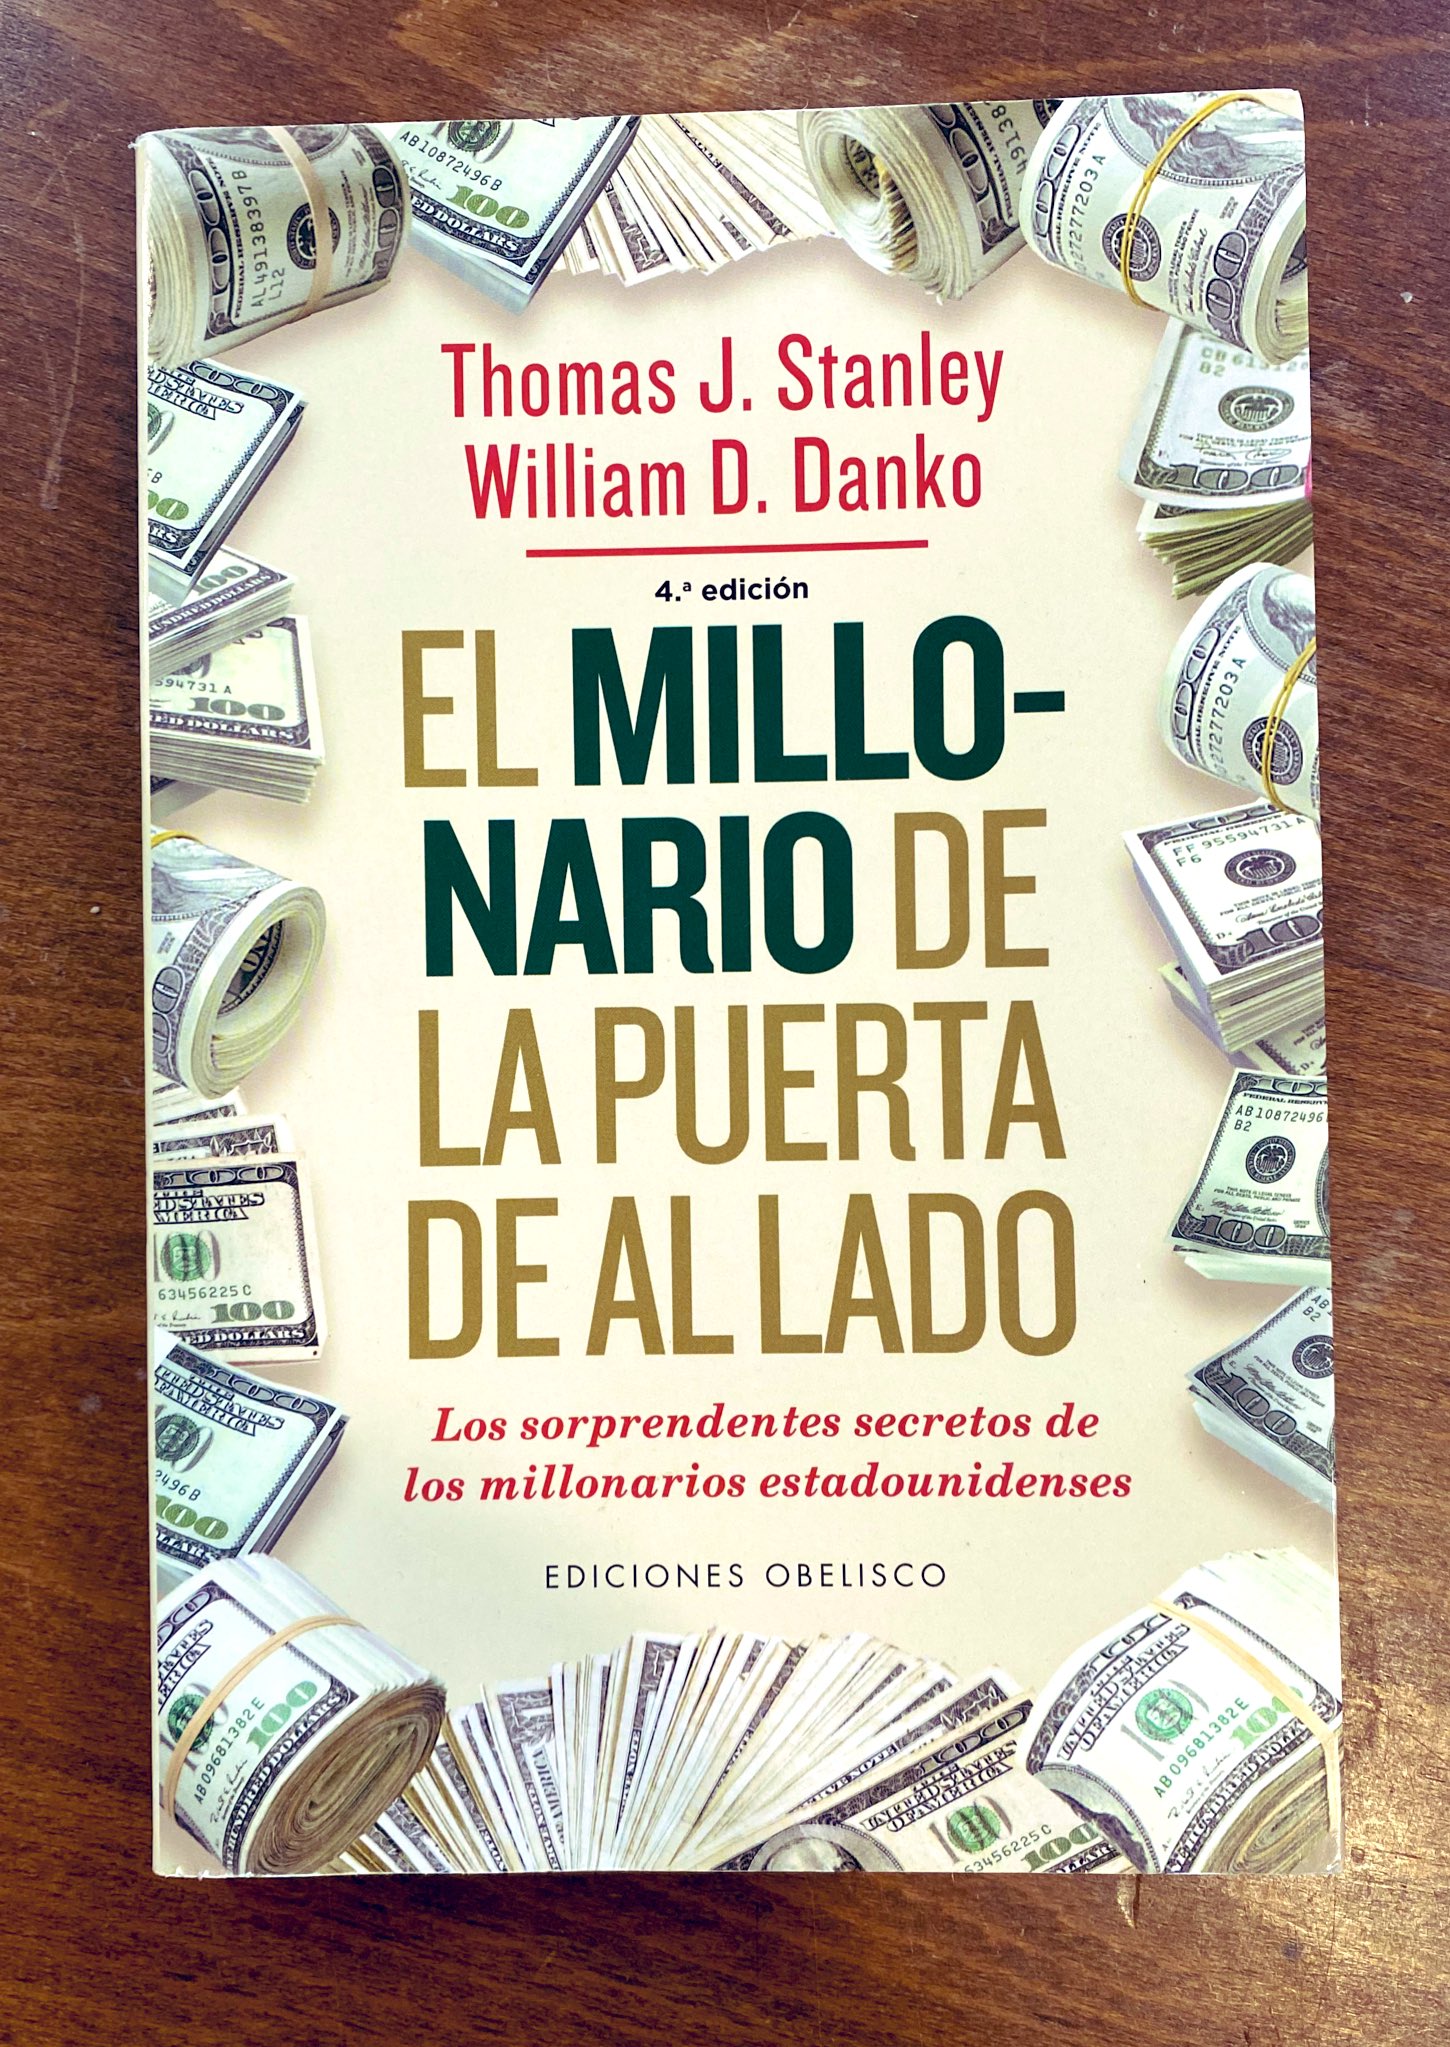 Jorge Chibás on X: “La riqueza es lo que acumulas, no lo que gastas”. - El  millonario de la puerta de al lado.  / X